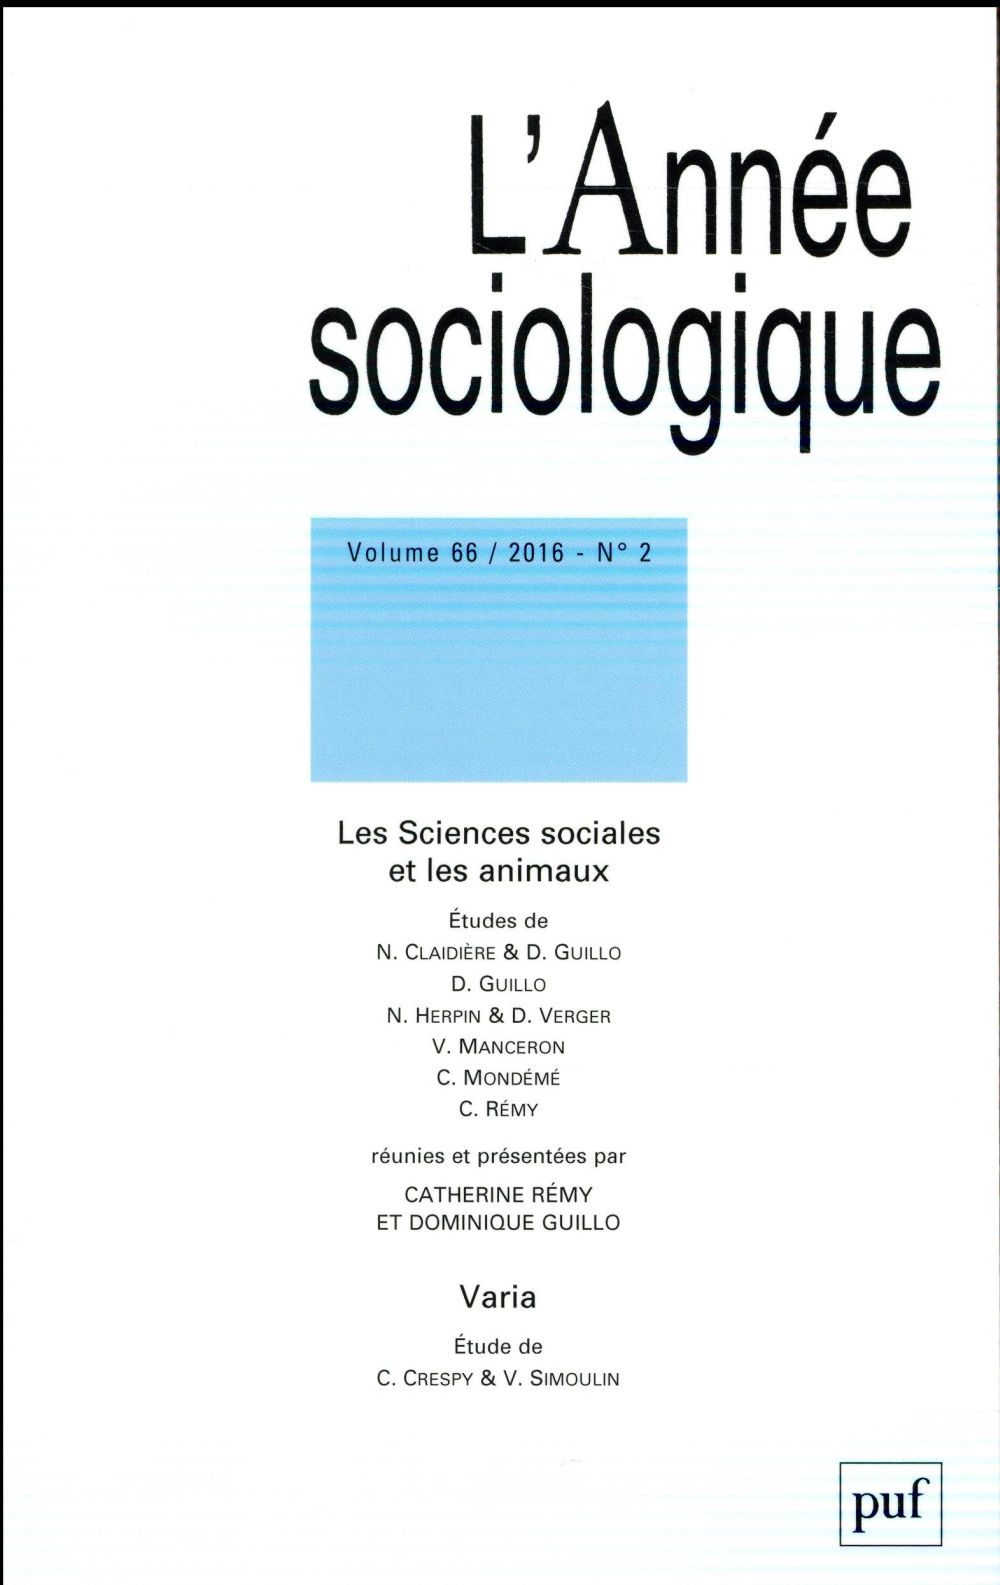 ANNEE SOCIOLOGIQUE 2016, VOL. 66 (2) - LES SCIENCES SOCIALES ET LES ANIMAUX